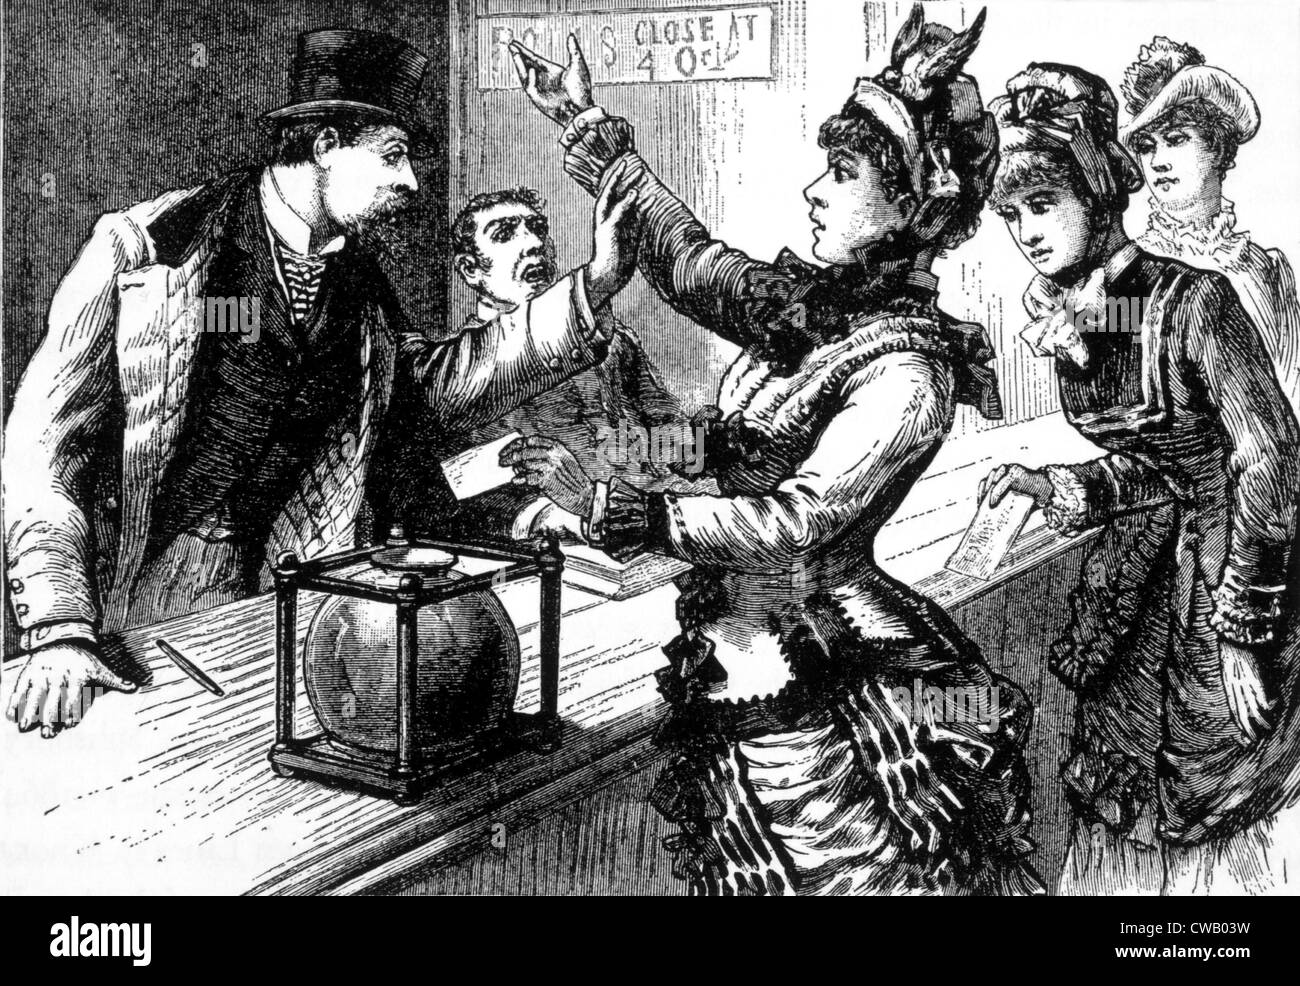 Une foule de femmes fortes font sensation à New York uptown un lieu de vote. Illustration dans la Gazette de la police), ch. 1870. Banque D'Images